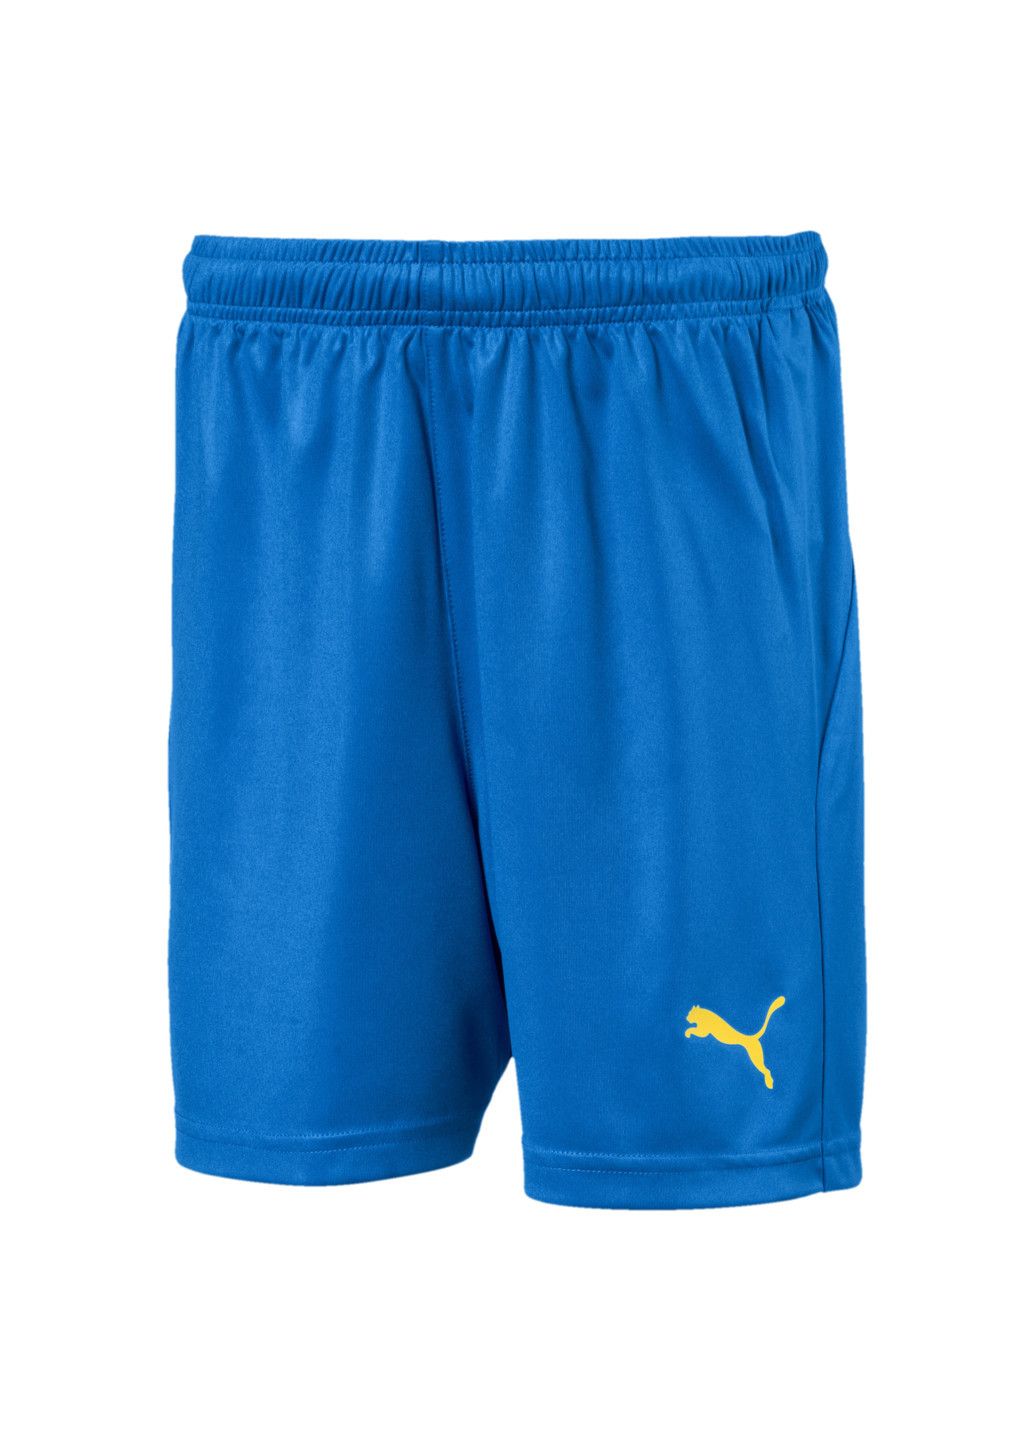 Шорты LIGA Kids’ Football Shorts Puma однотонные синие спортивные полиэстер